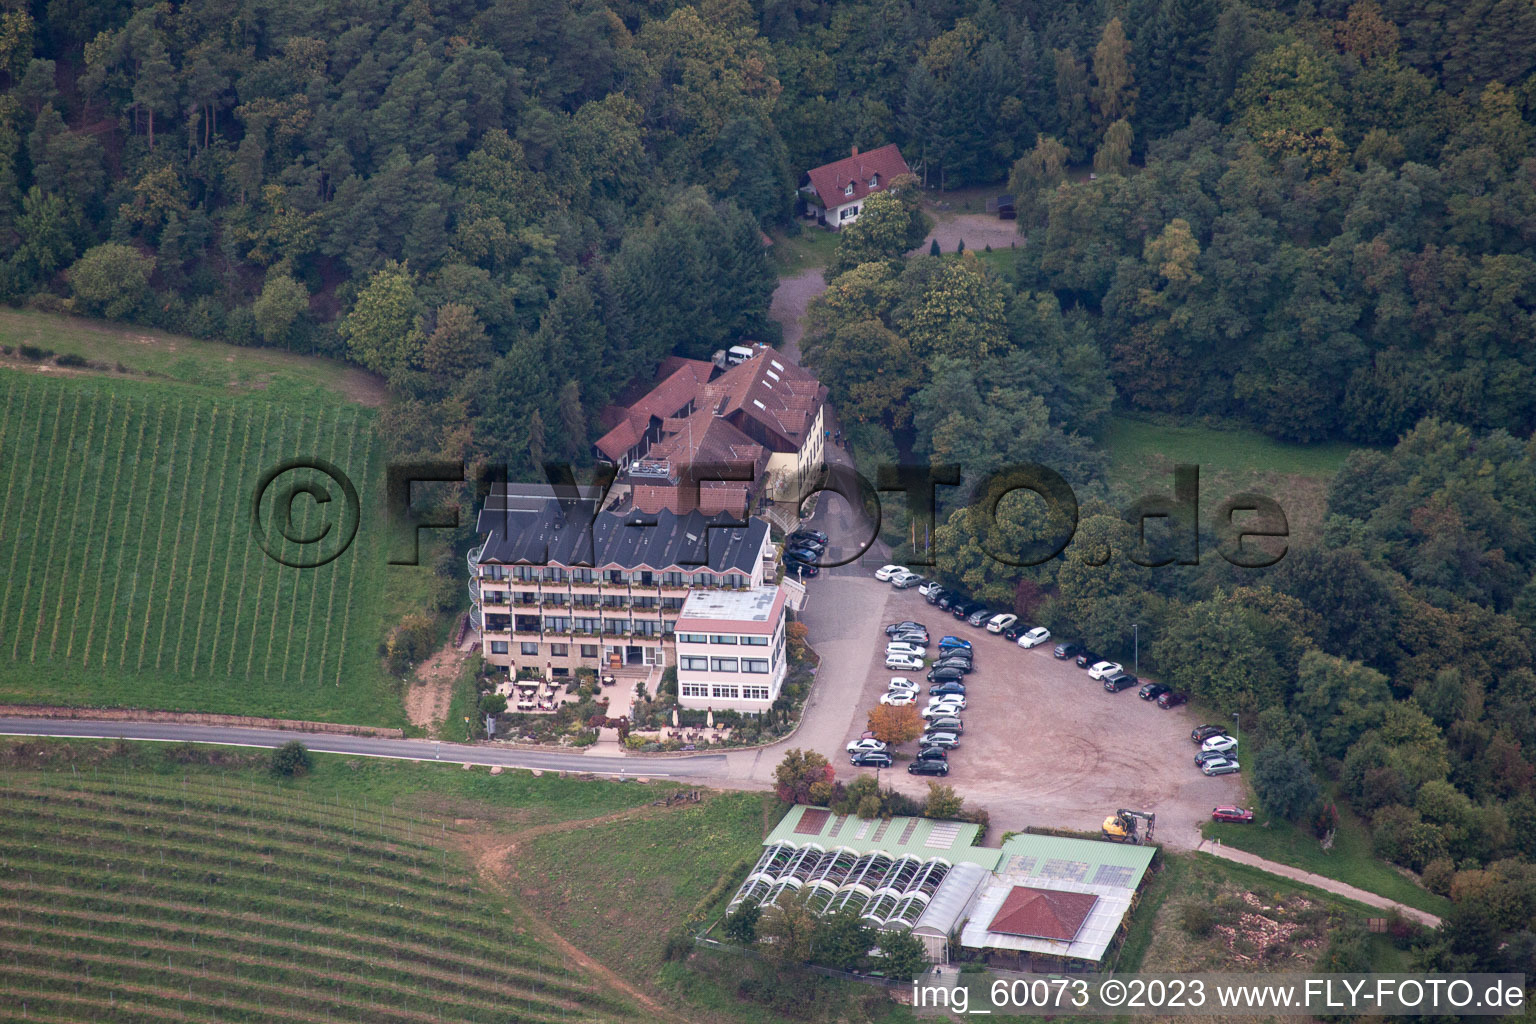 Vue aérienne de Hôtel Haus am Weinberg à Sankt Martin dans le département Rhénanie-Palatinat, Allemagne